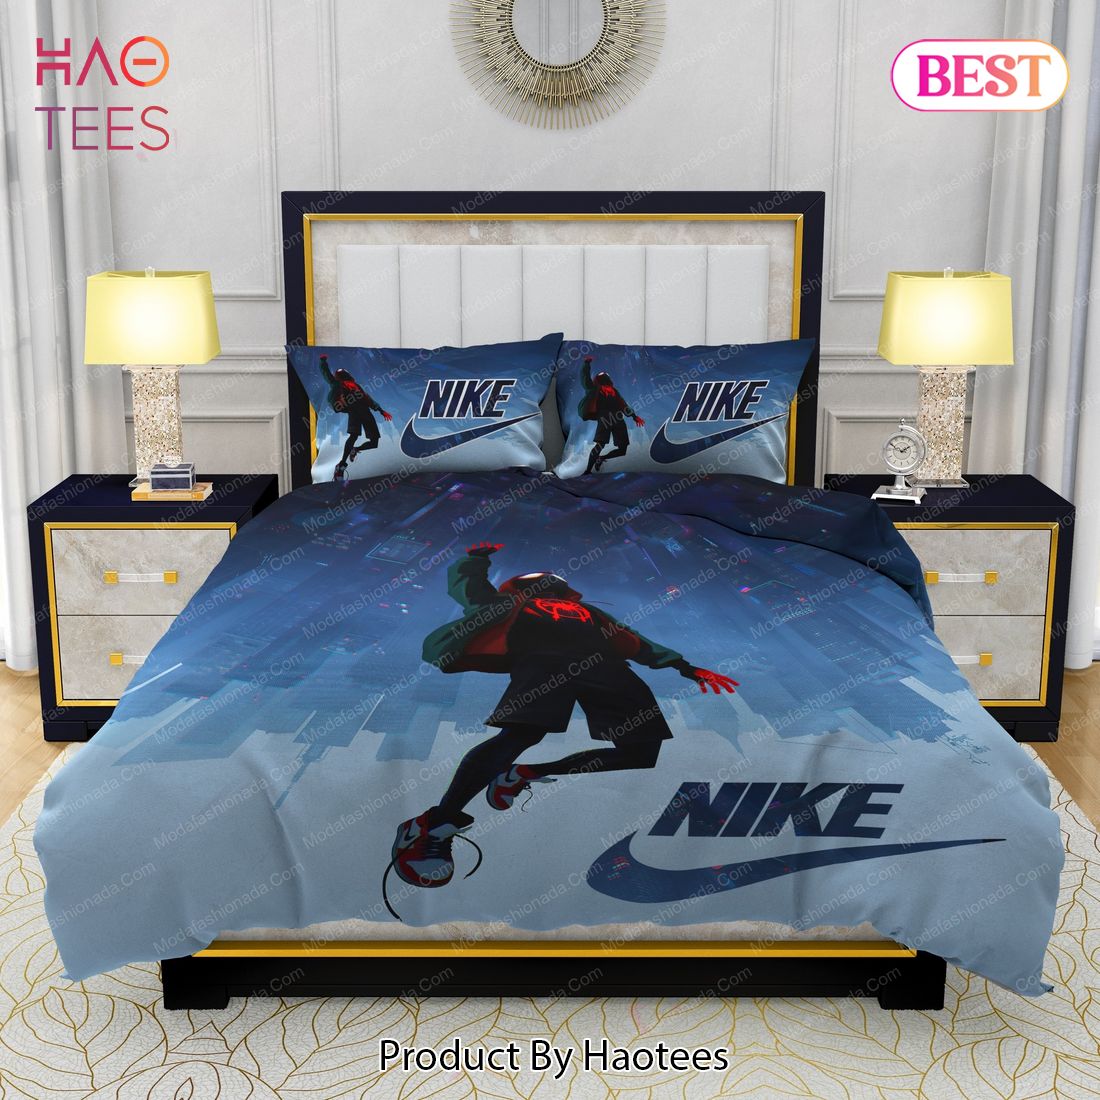 Famous Nike Air Jordan and Spider Man Bedding Sets Bed Sets, Bedroom Sets, Comforter Sets, Duvet Cover, Bedspread